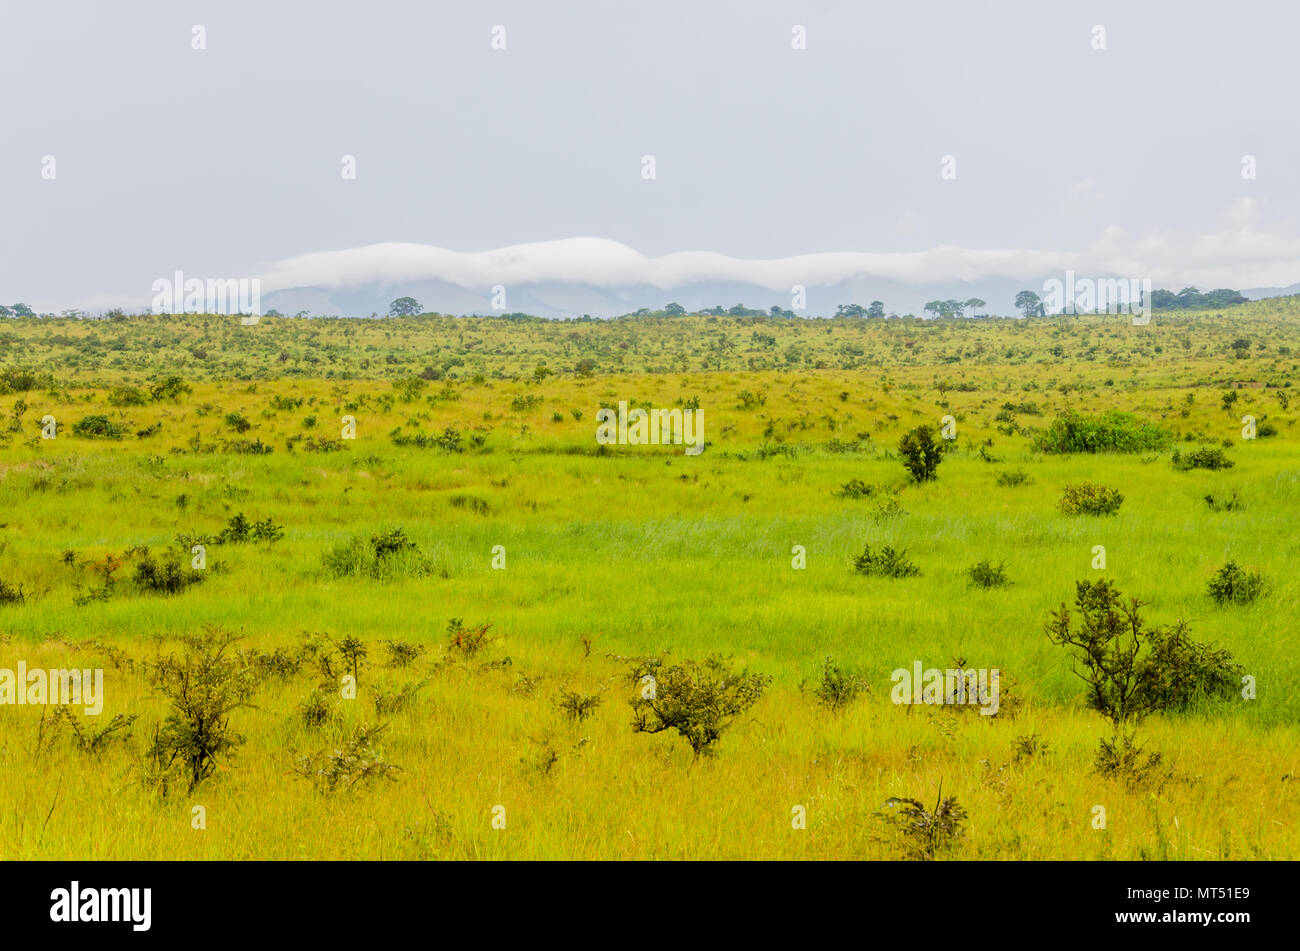 Des collines, l'herbe verte et des nuages blancs dans la campagne de la République du Congo, Afrique Centrale Banque D'Images